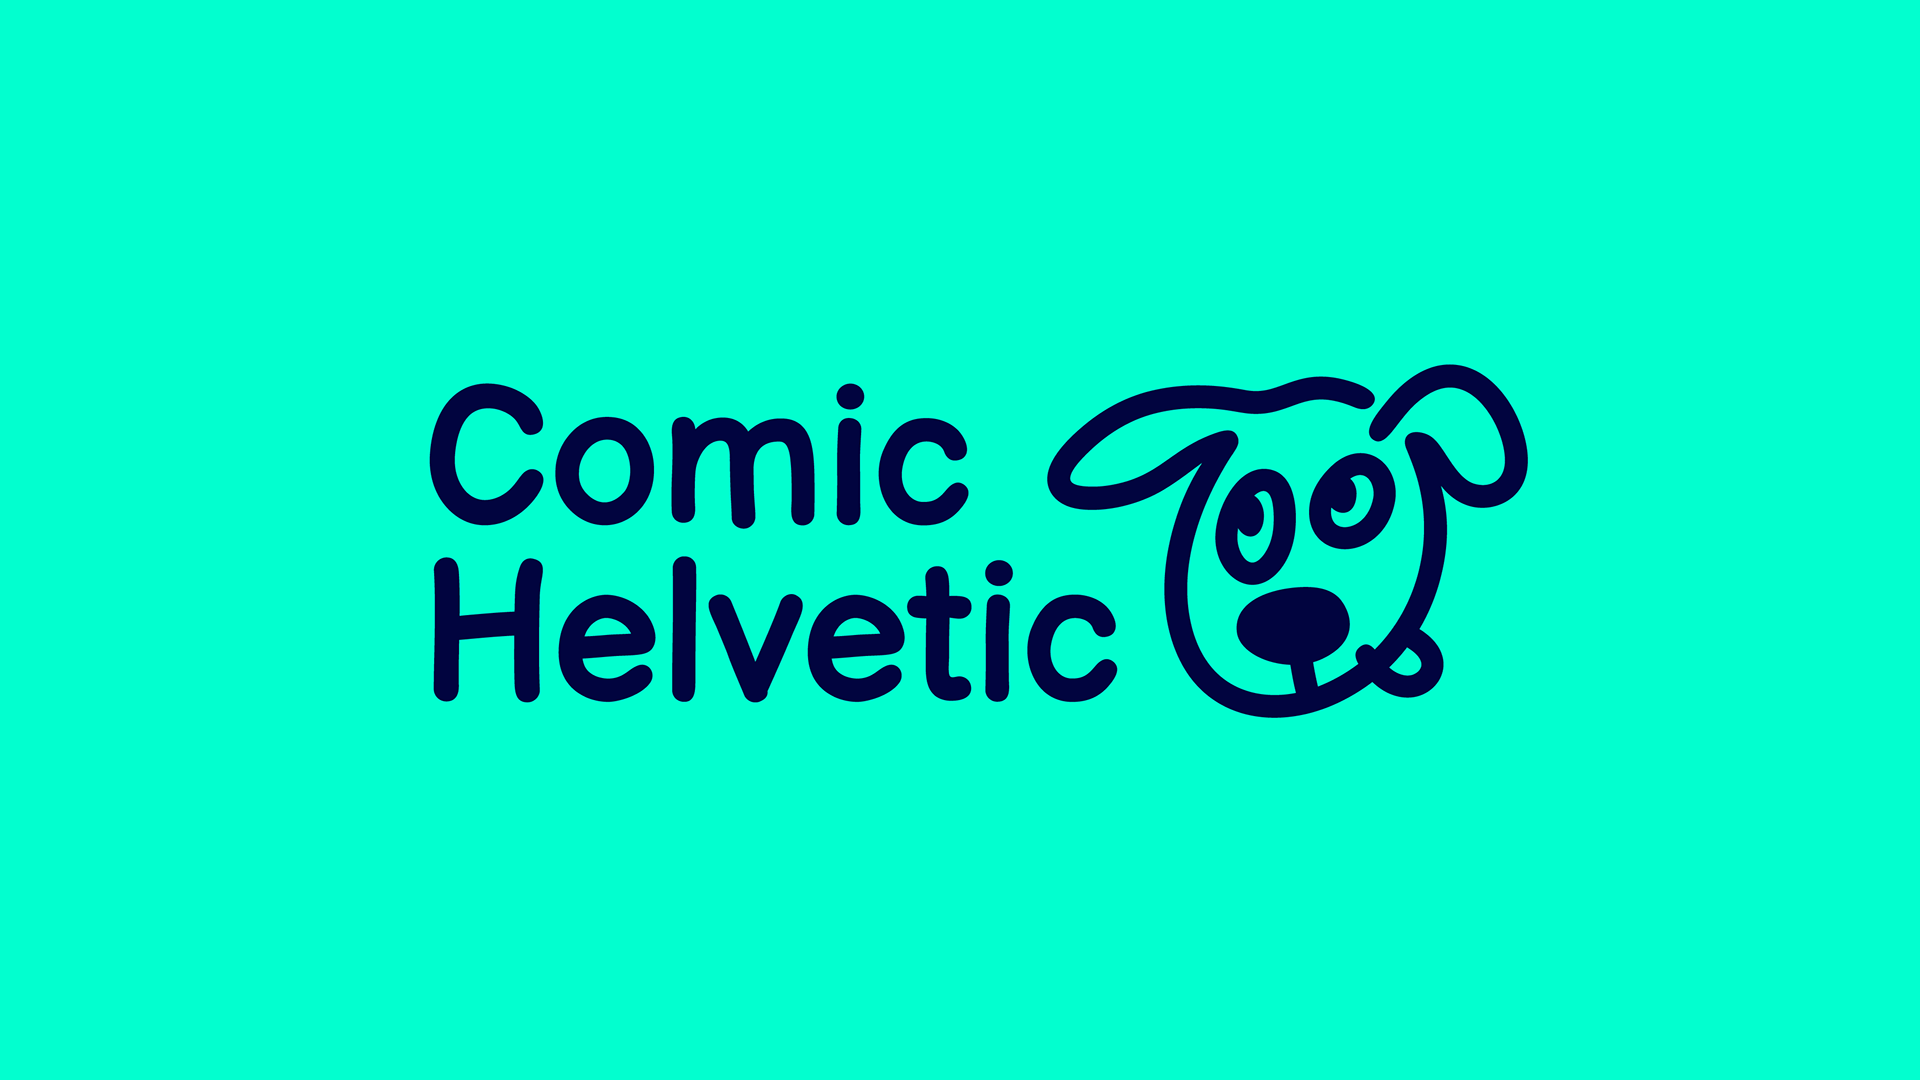 Comic Helvetic fancy